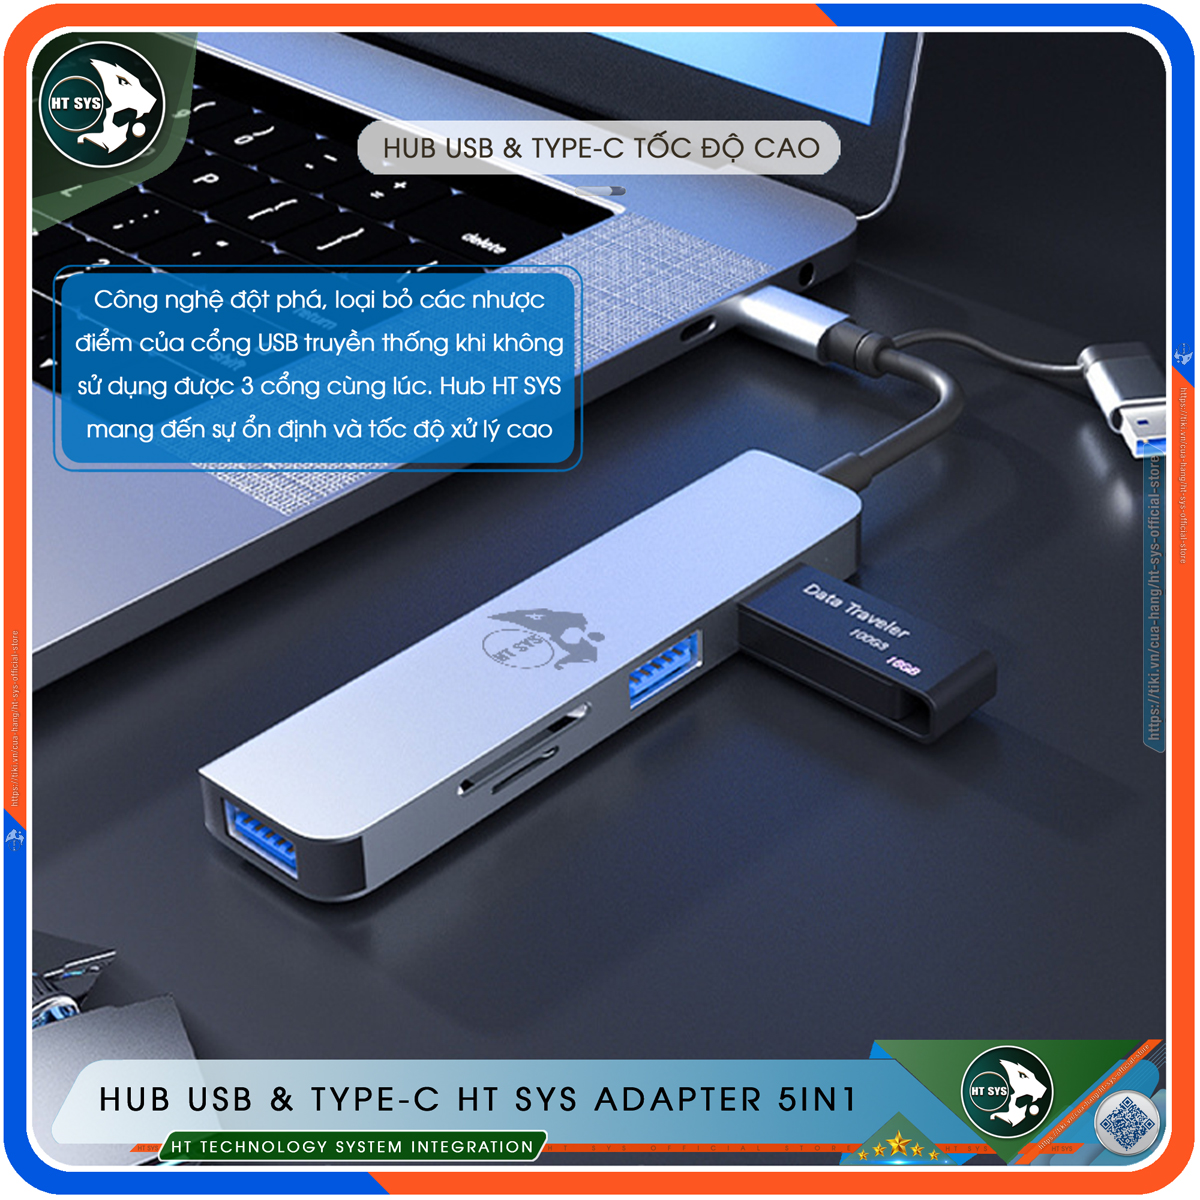 Hub Type C Và Hub USB 3.0 HT SYS Adapter 5in1 - Cổng Chia USB Mở Rộng Kết Nối Tốc Độ Cao Dành Cho Macbook, Laptop, PC - Hub Chuyển Đổi USB Type-C Hỗ Trợ Sạc Pin, Kết Nối Đa Năng ổ Cứng, Bàn Phím, Chuột, Máy In, Ổ Chia USB - Hàng Chính Hãng